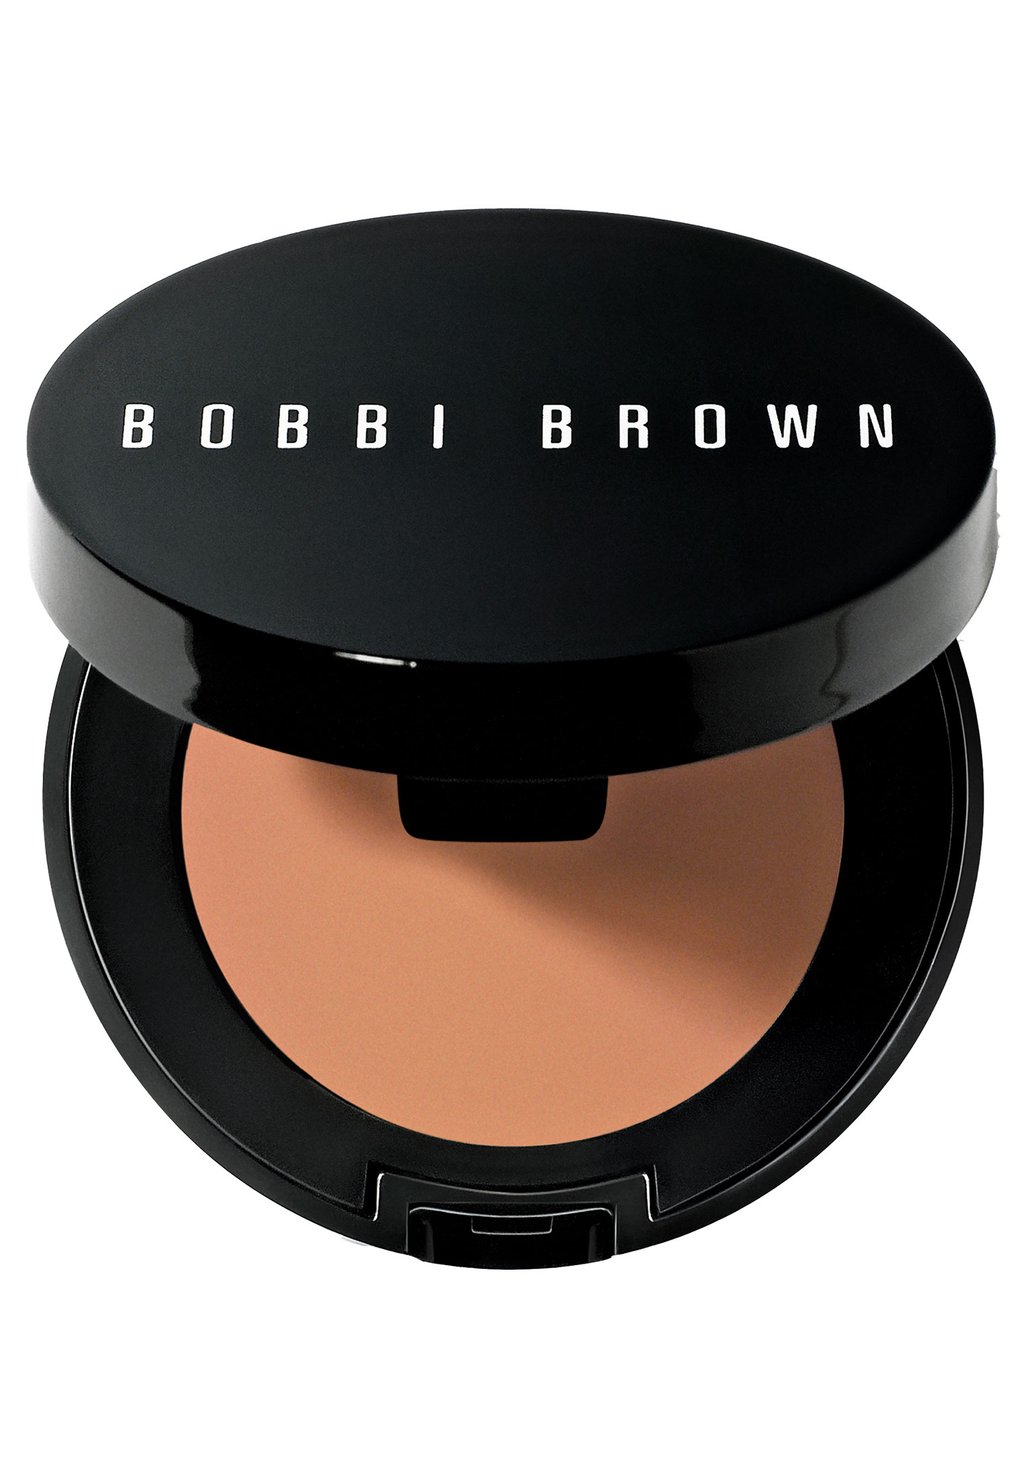 Консилер Corrector Bobbi Brown, цвет dark bisque консилер skin corrector stick bobbi brown цвет deep bisque